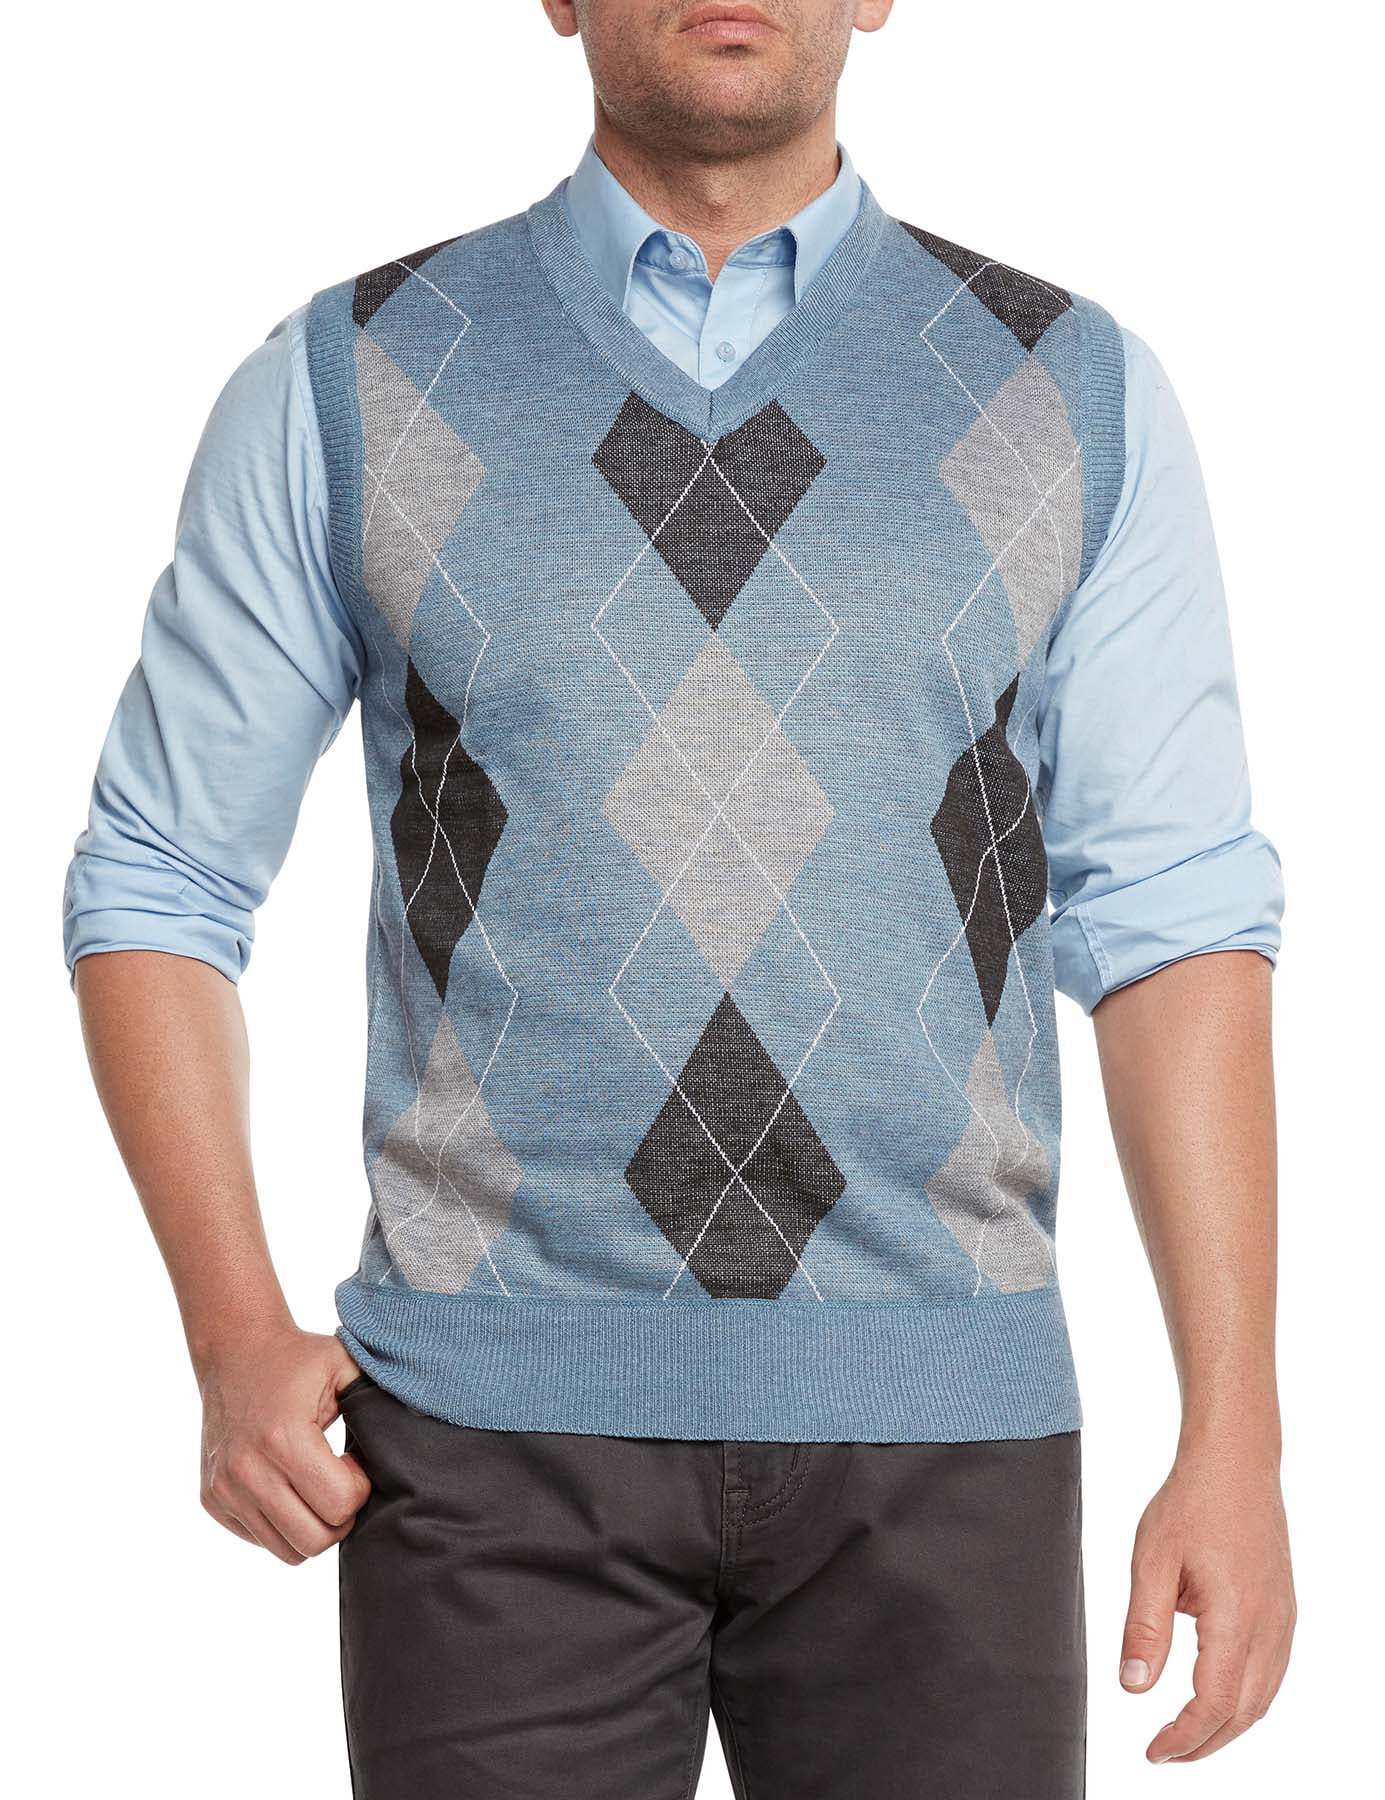 True Rock Men's Athletic Cut Argyle V-Neck Sweater Vest - Walmart.com